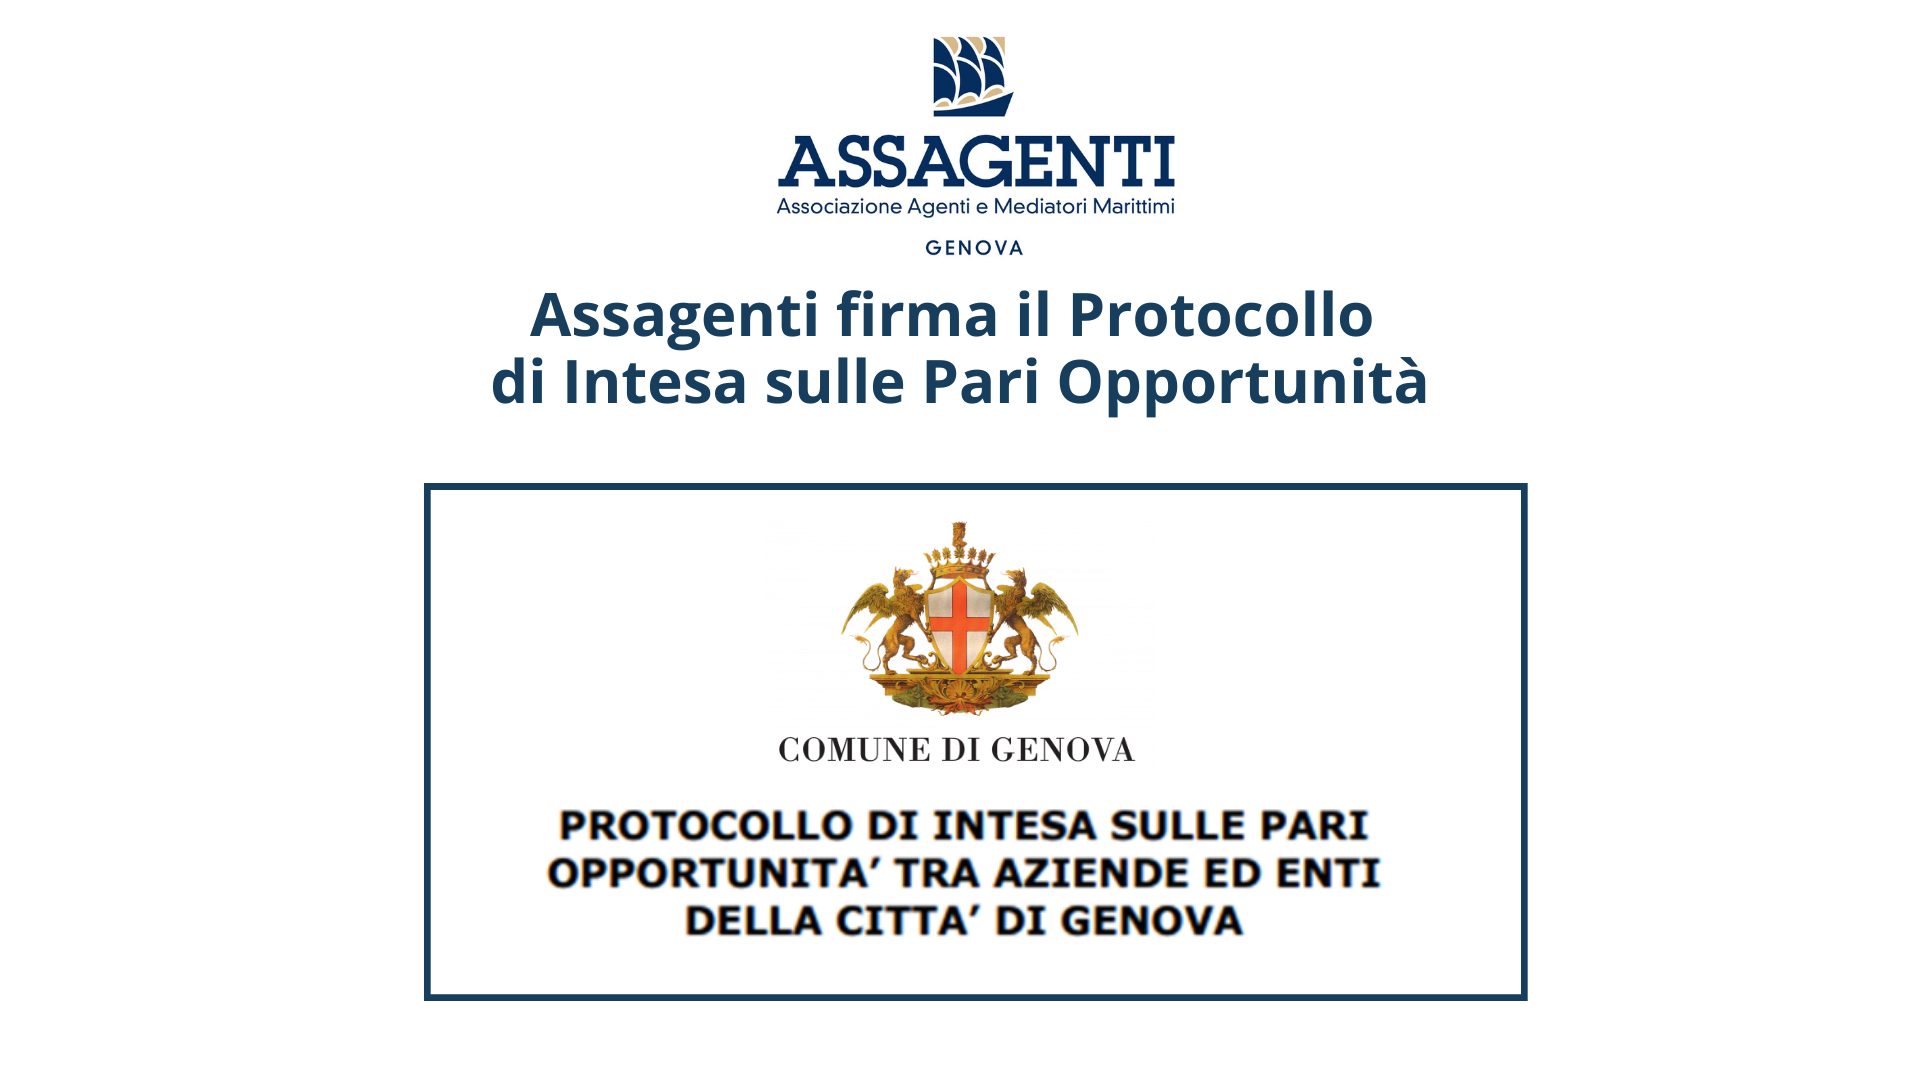 Assagenti sottoscrive il Protocollo d’Intesa sulle Pari Opportunità con il Comune di Genova